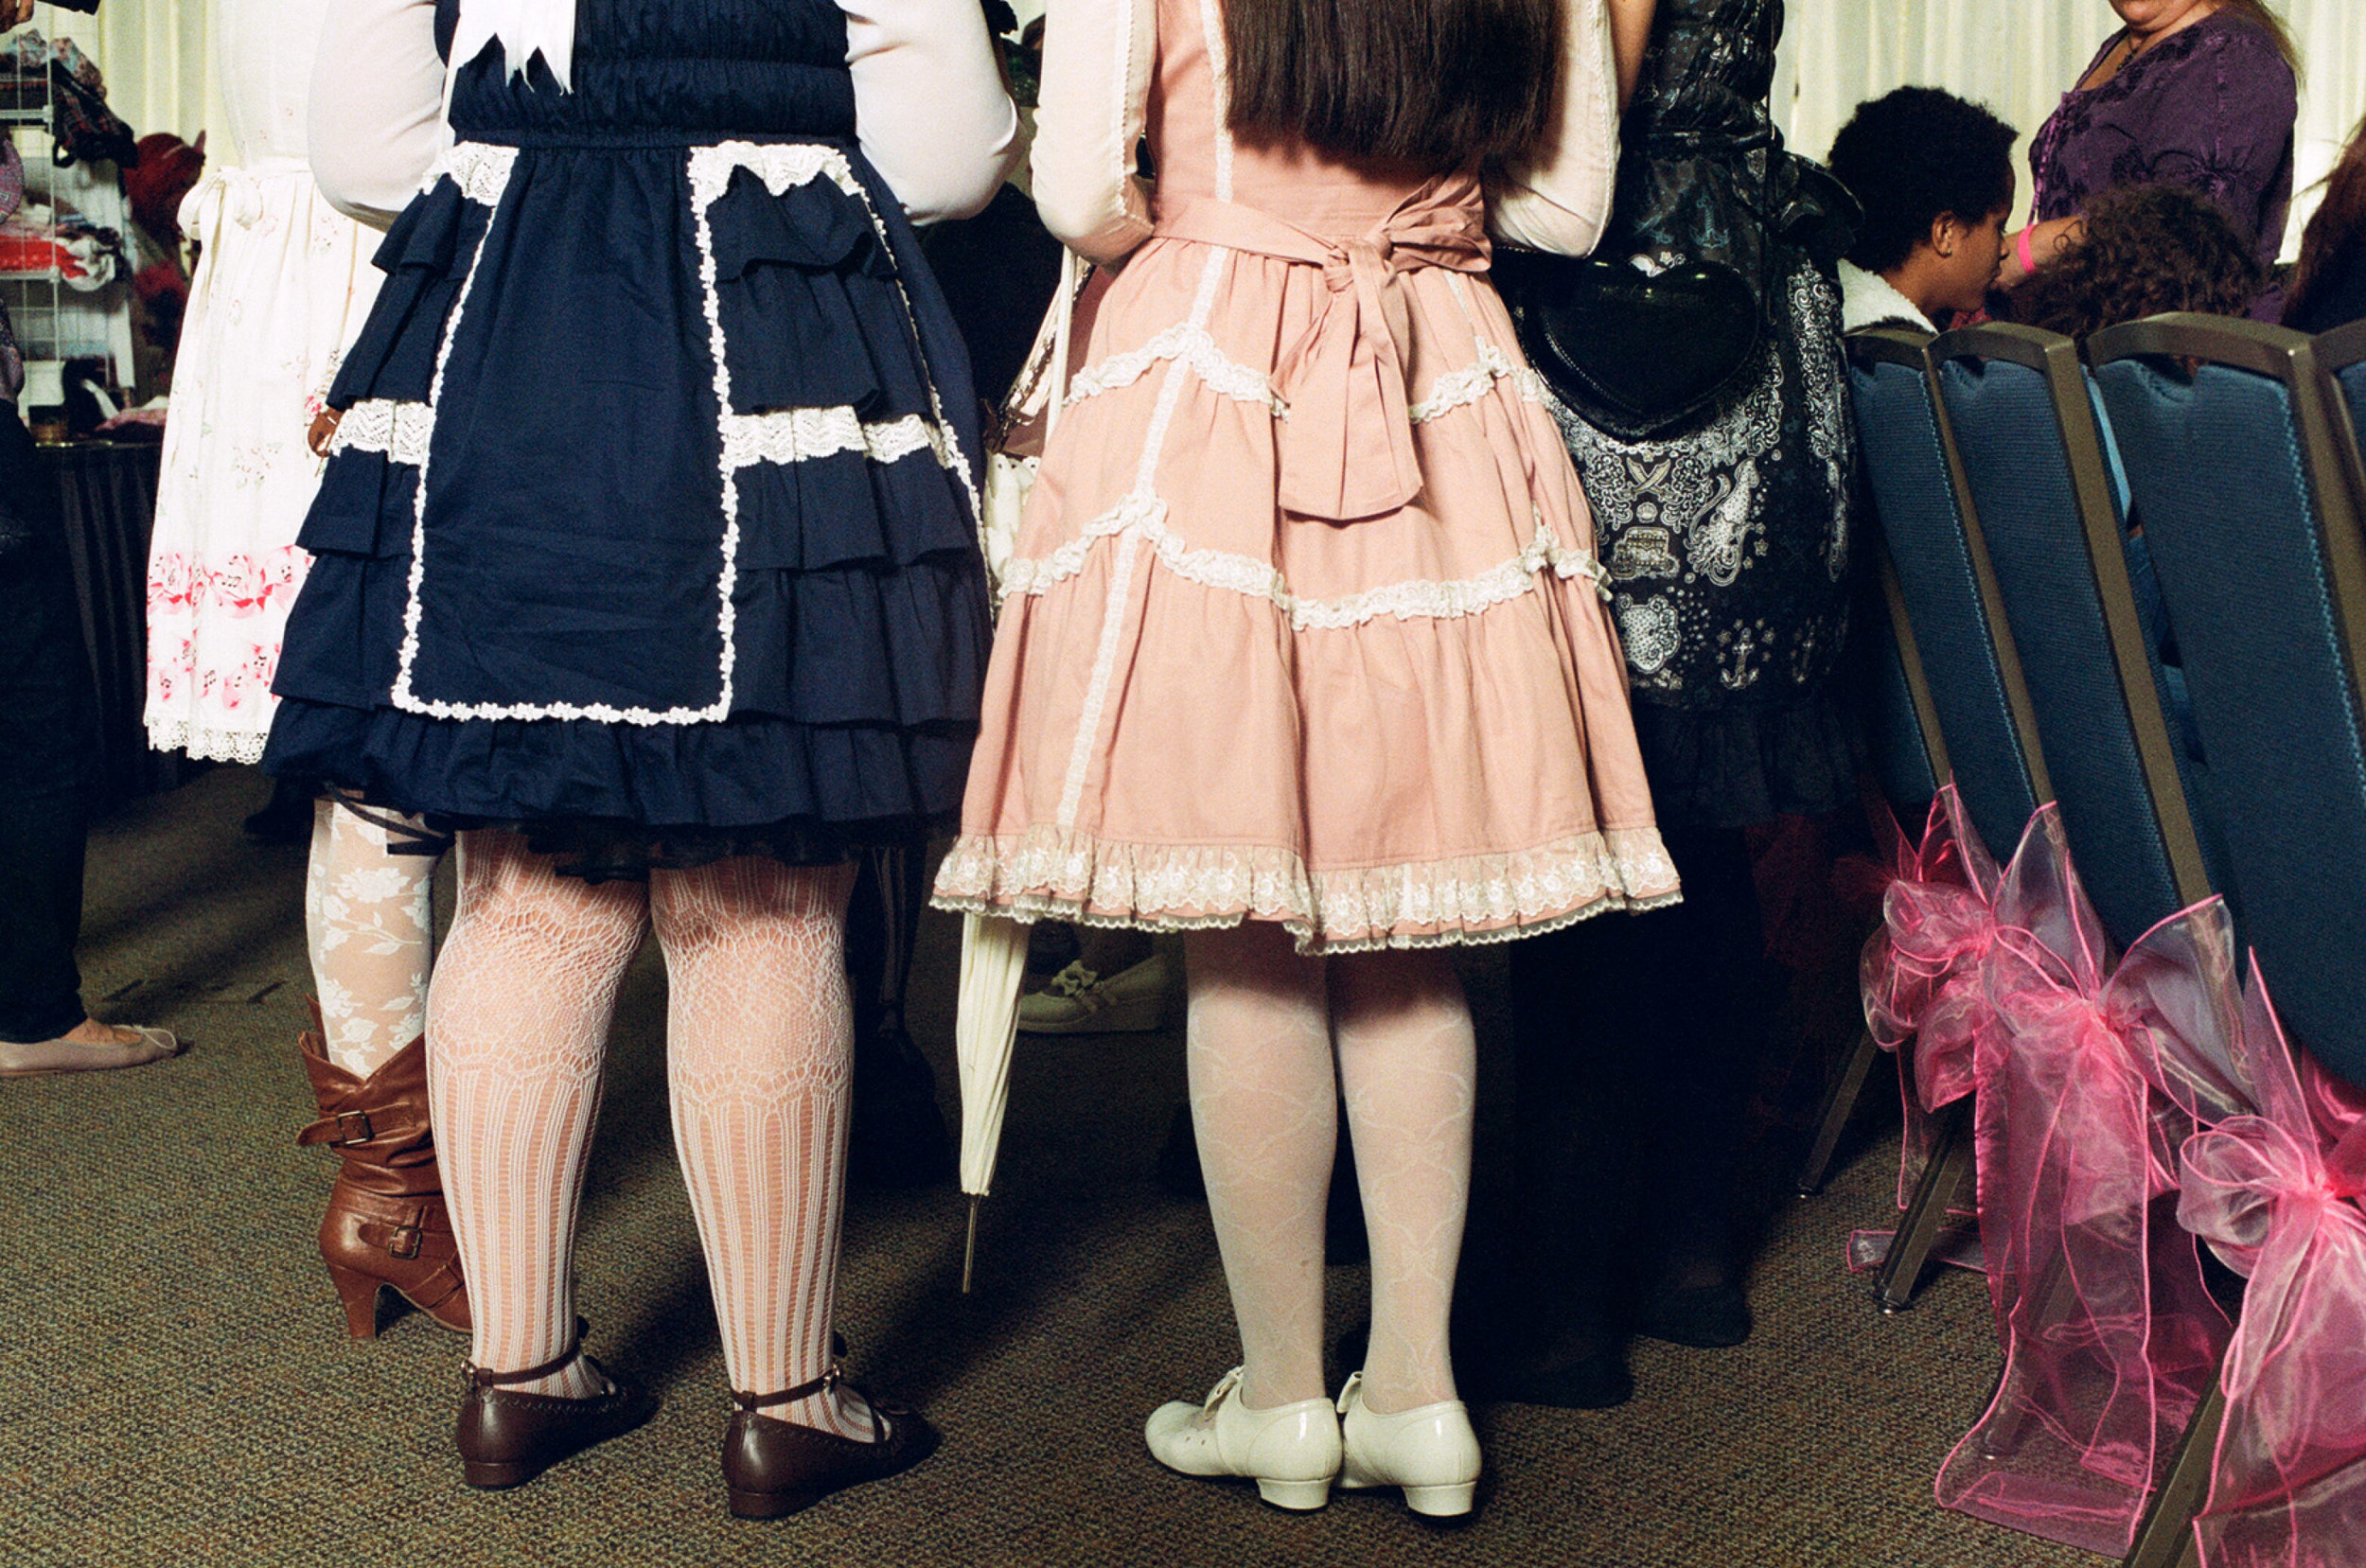  Lolita fashion show in Orange County, CA. 